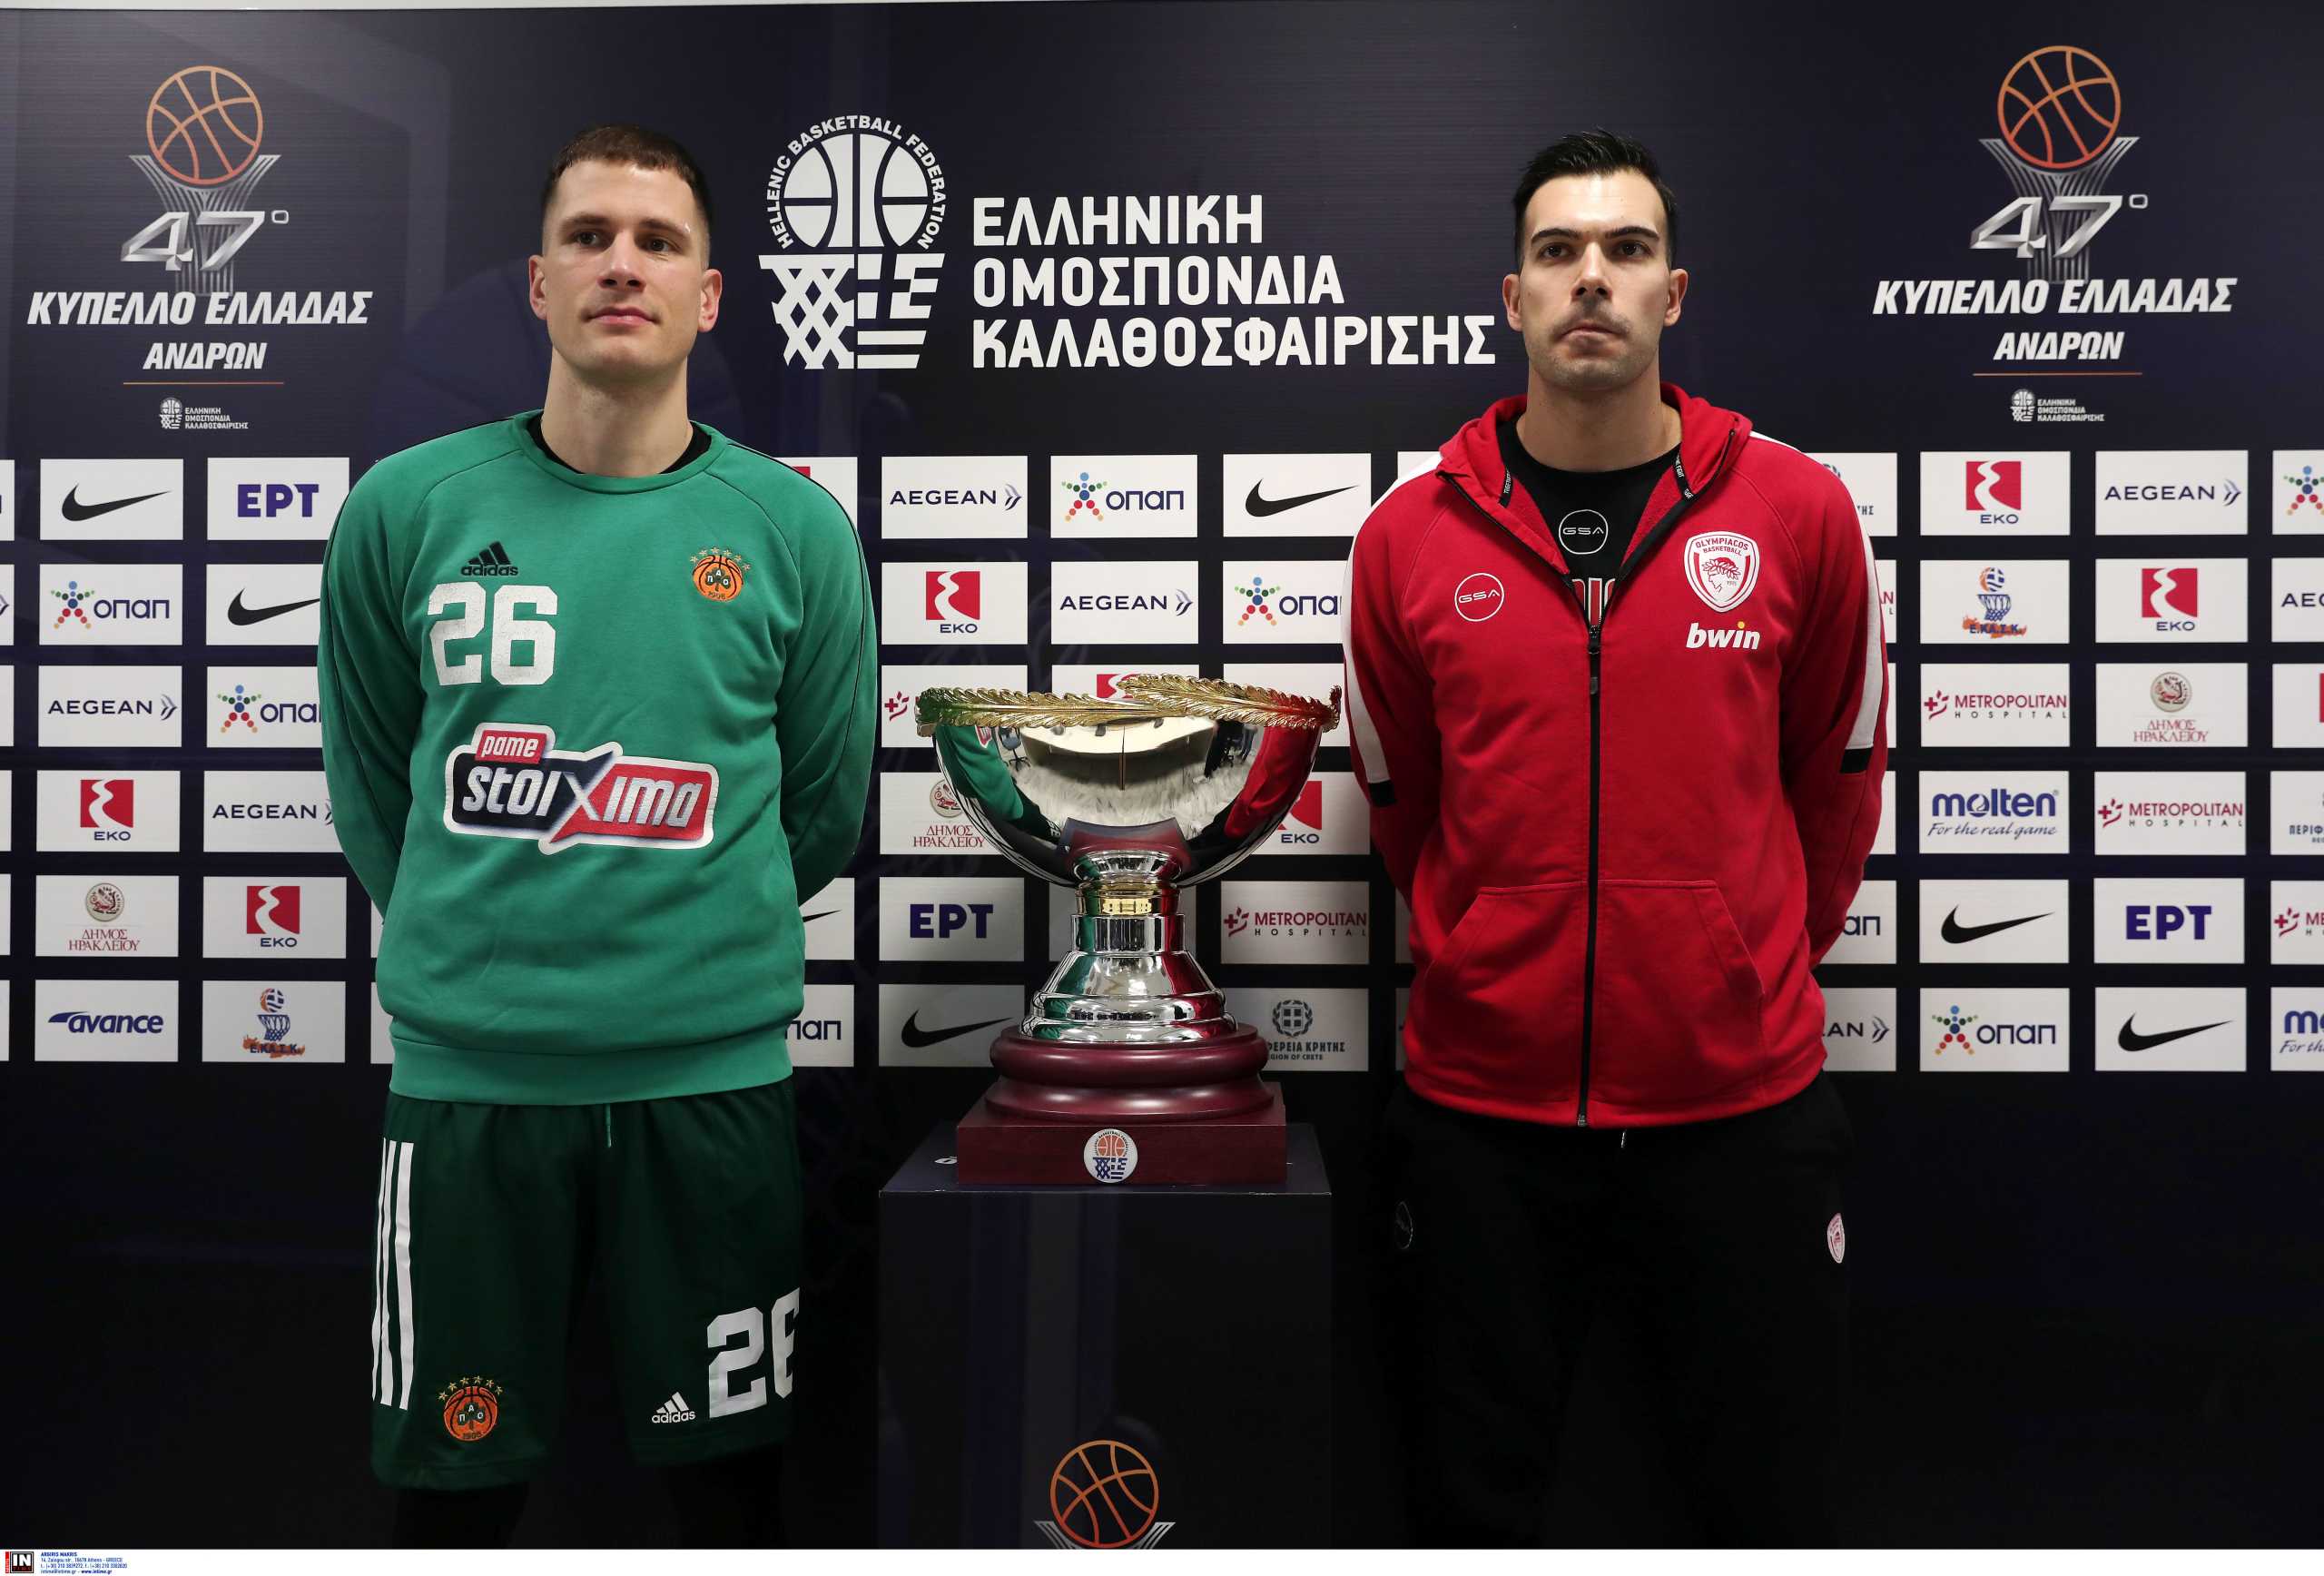 Τελικός Κυπέλλου μπάσκετ: Οι δηλώσεις Σλούκα και Νέντοβιτς ενόψει του μεγάλου ματς